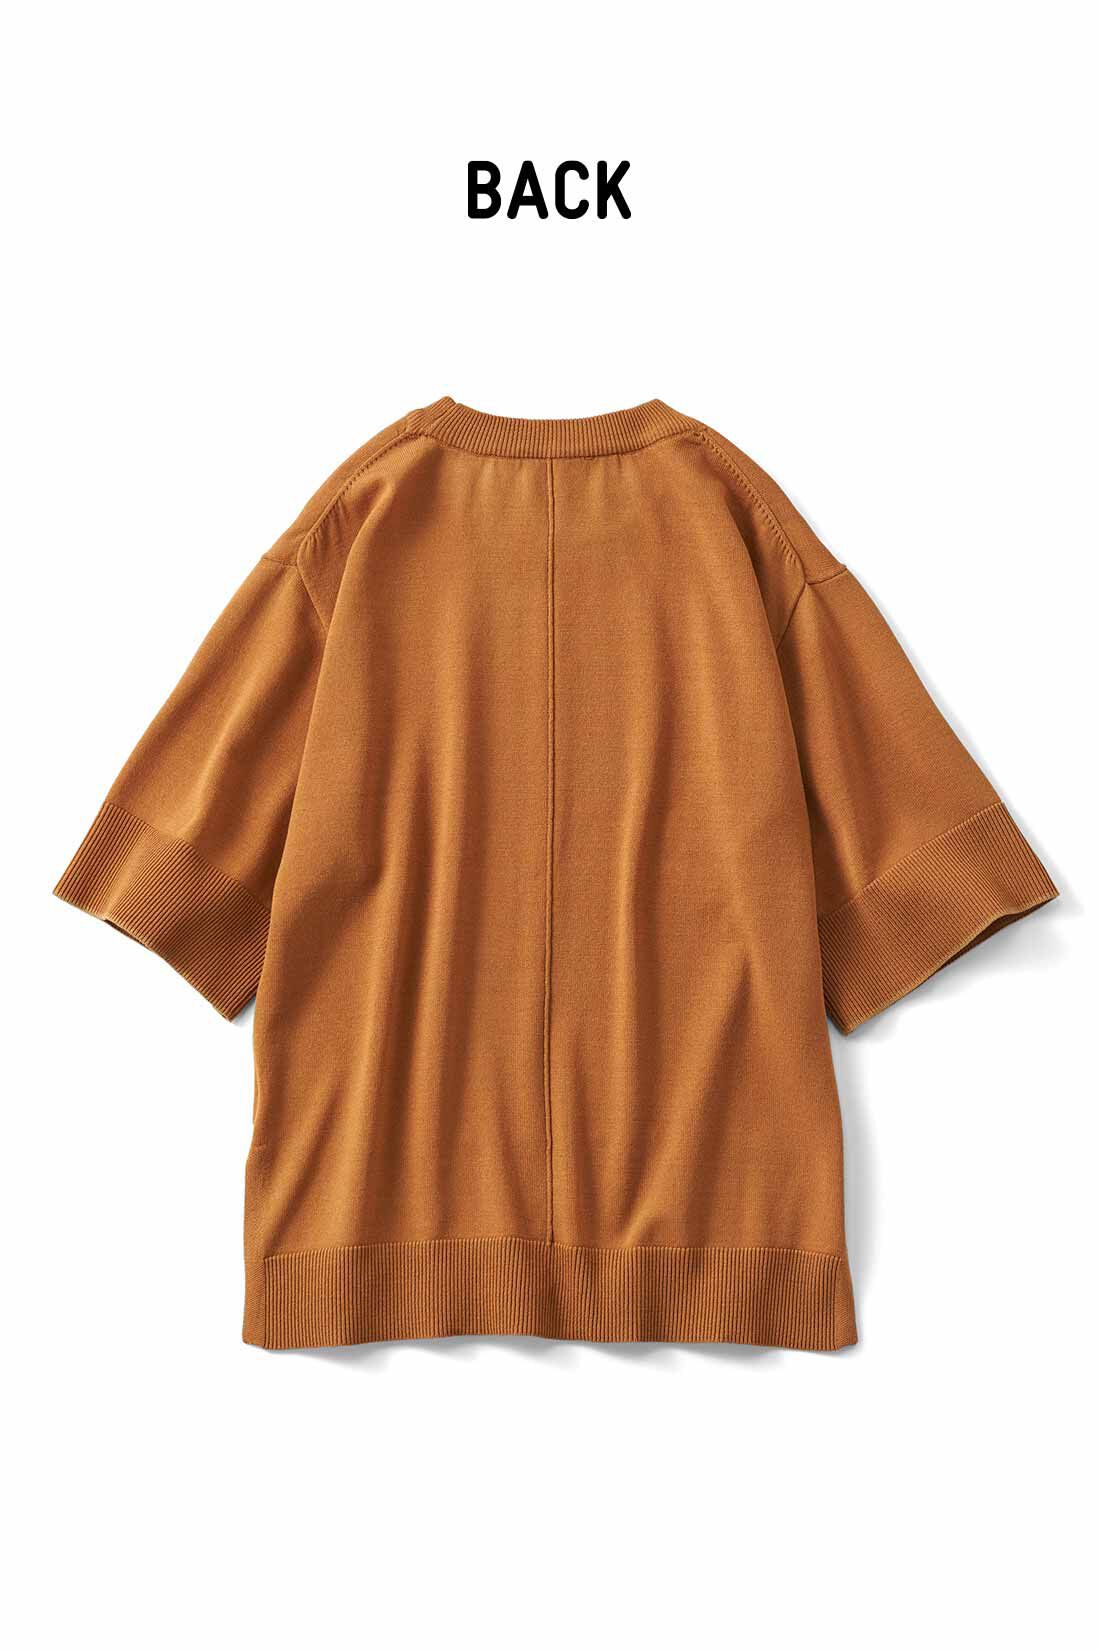 Real Stock|リブ イン コンフォート　Tシャツ感覚で着れちゃう きれいめニットトップス〈ネイビー〉|これは参考画像です。お届けするカラーとは異なります。